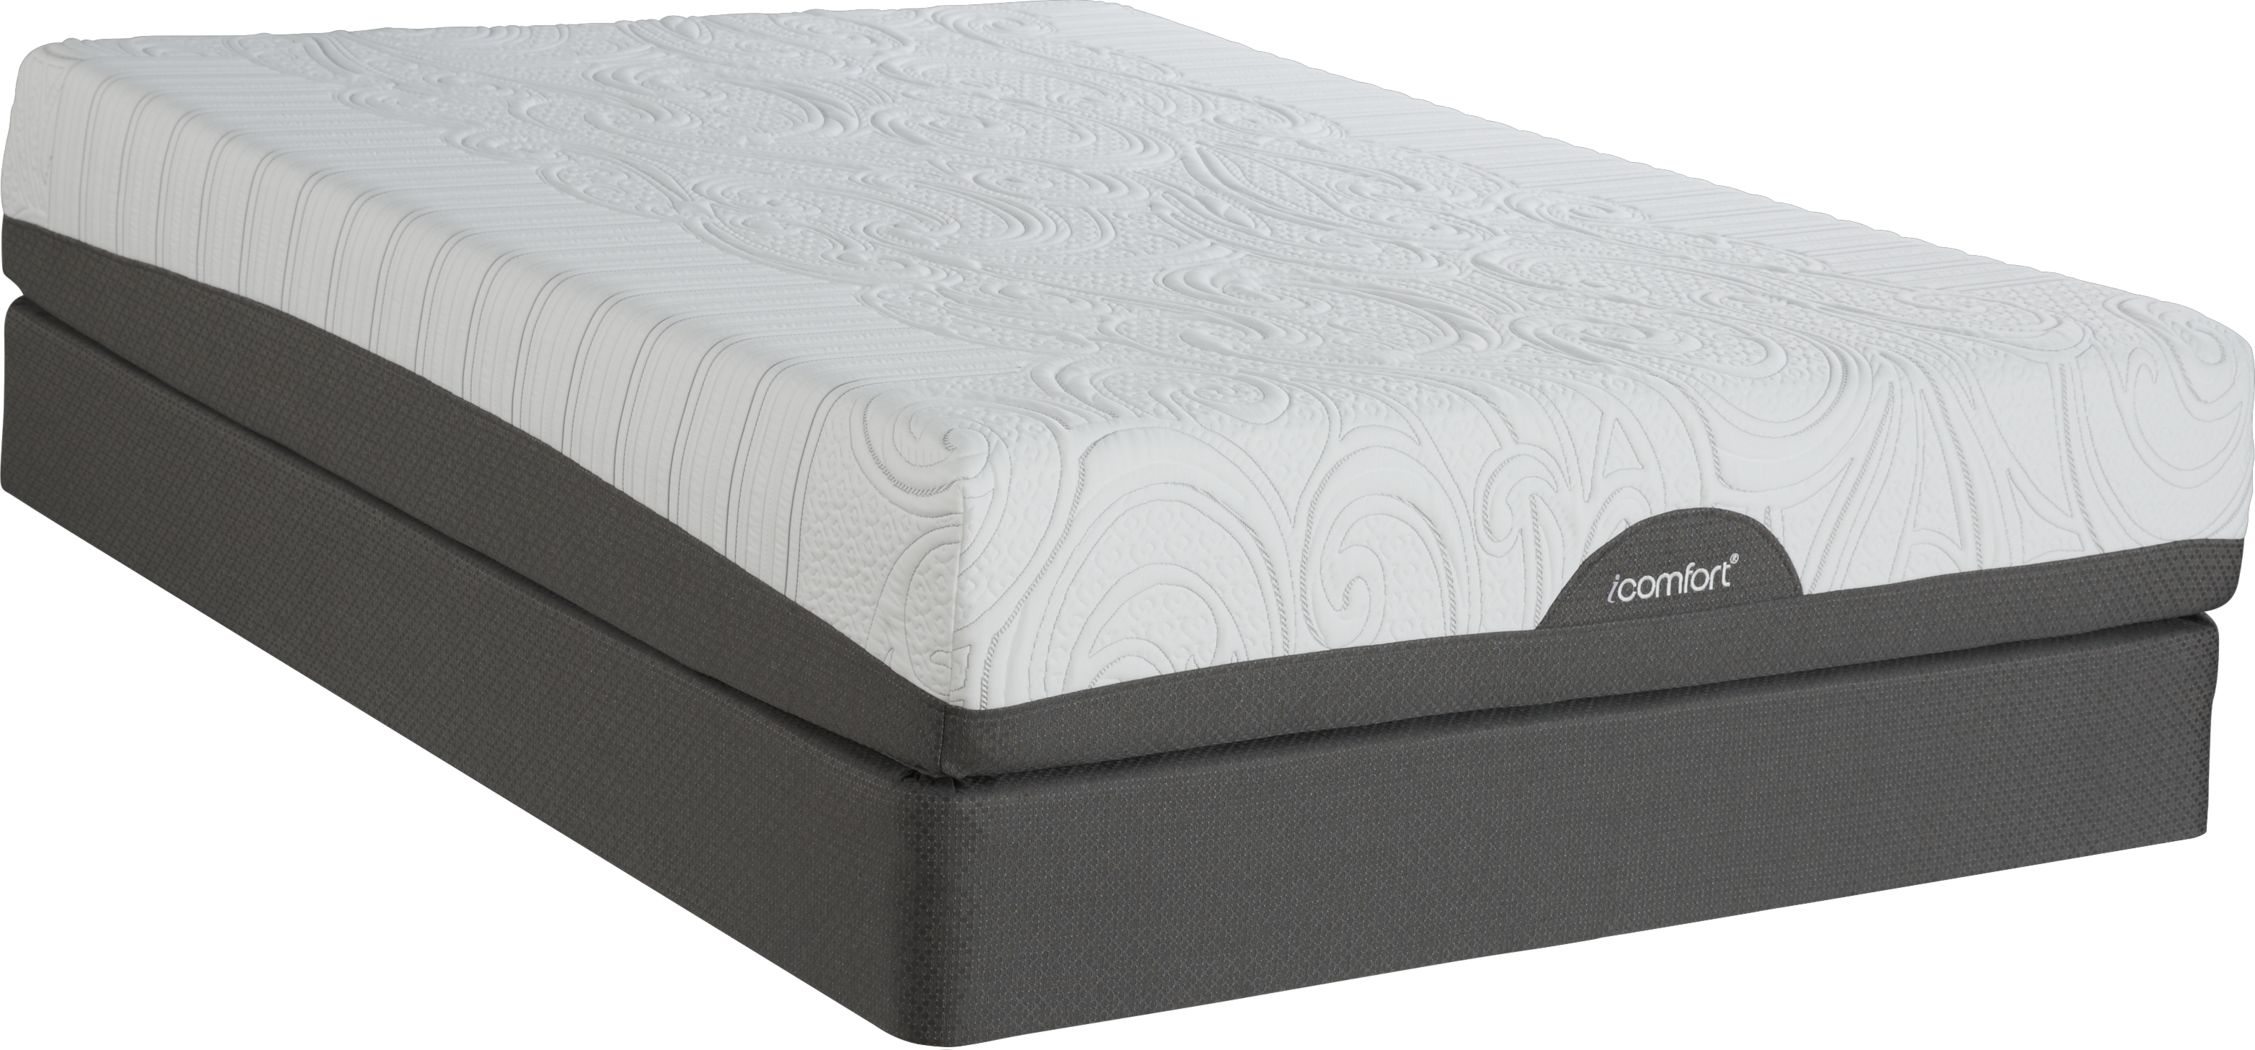 serta queen icomfort directions reinvention mattress weight